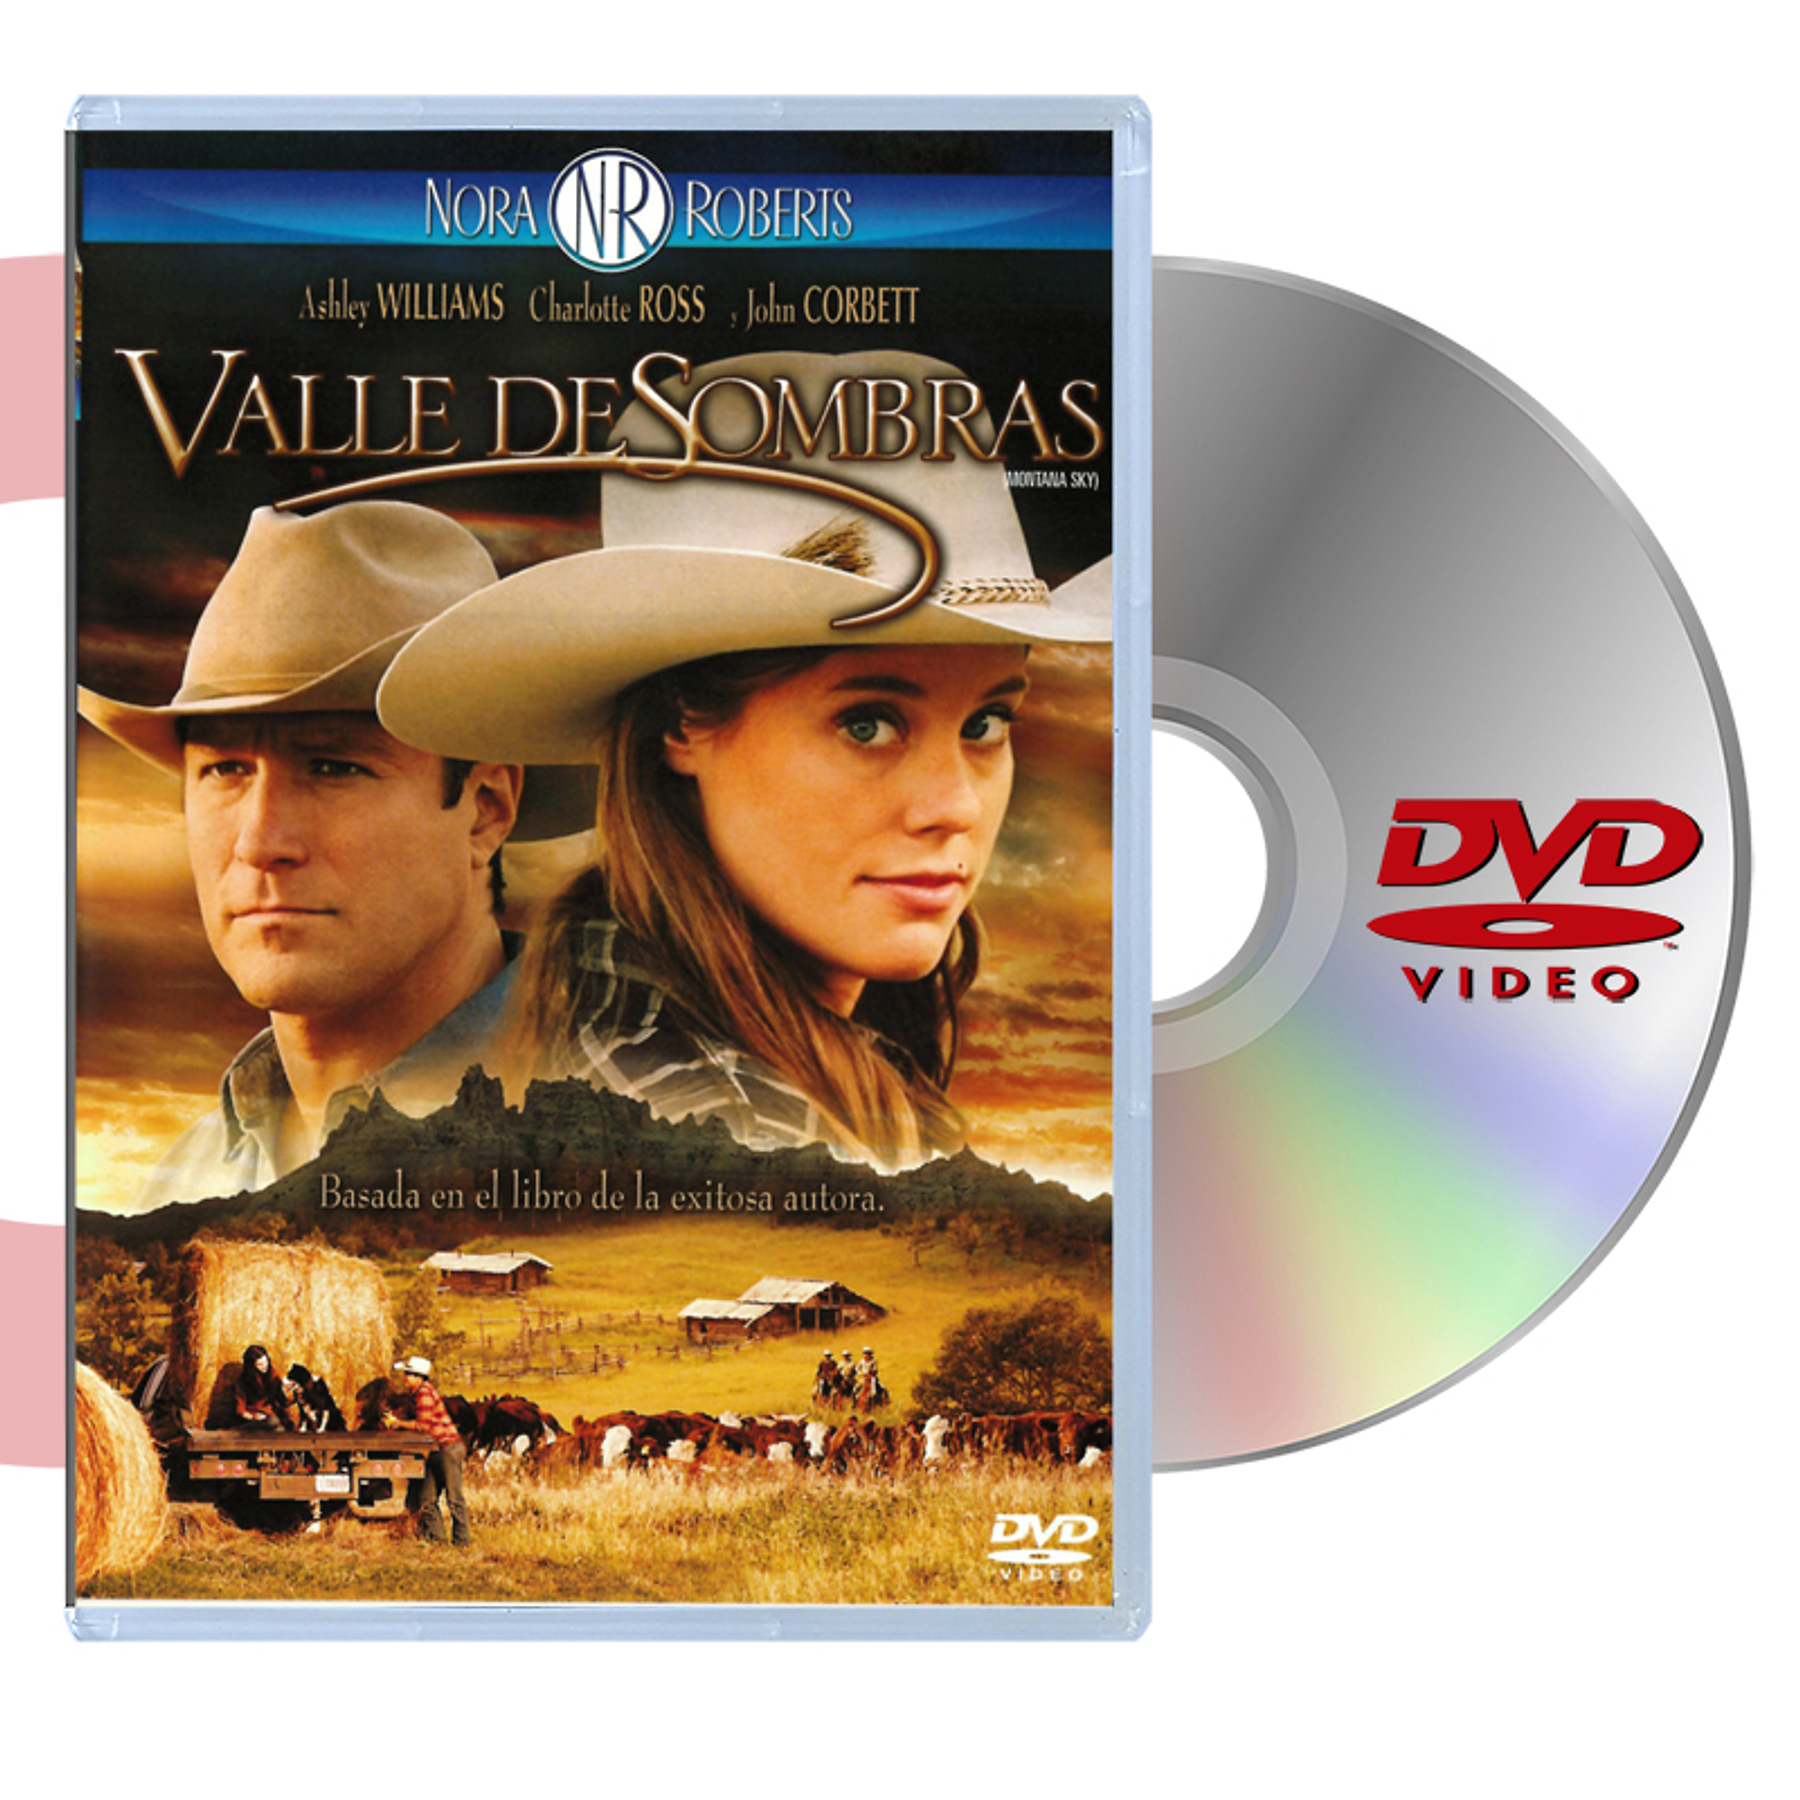 DVD VALLE DE SOMBRAS